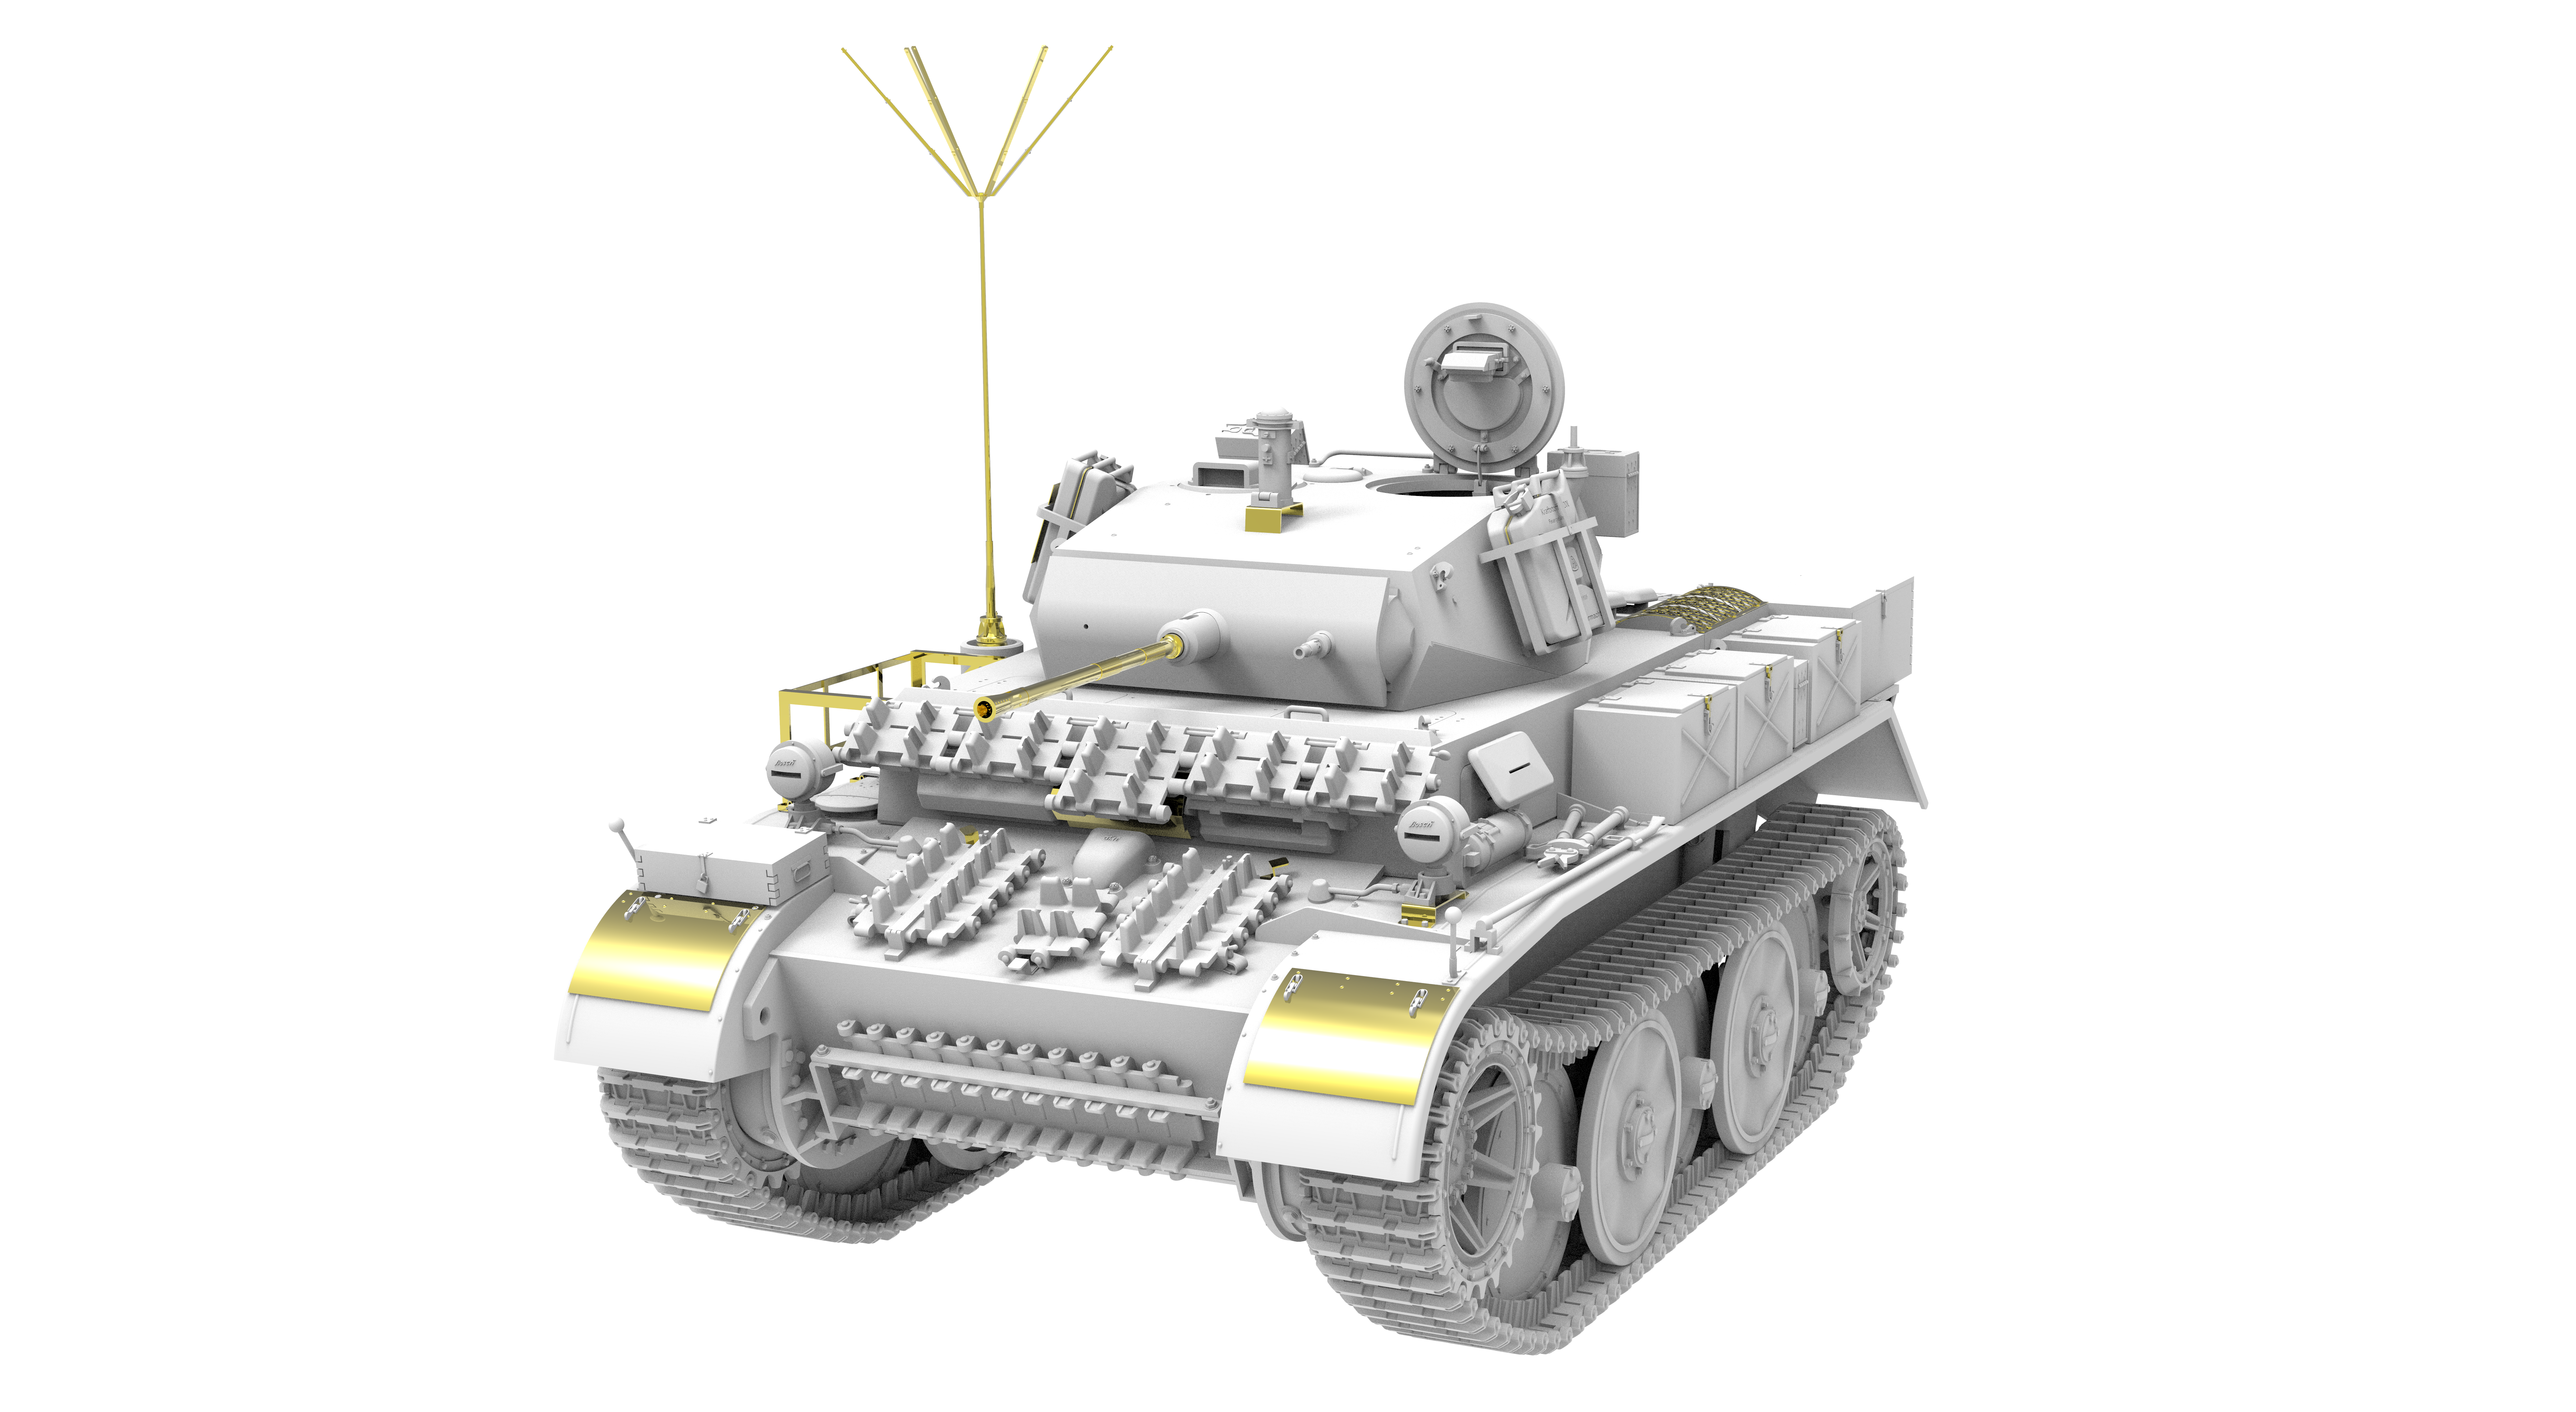 Pz.Kpfw.II Ausf.L Luchs - späte Ausführug